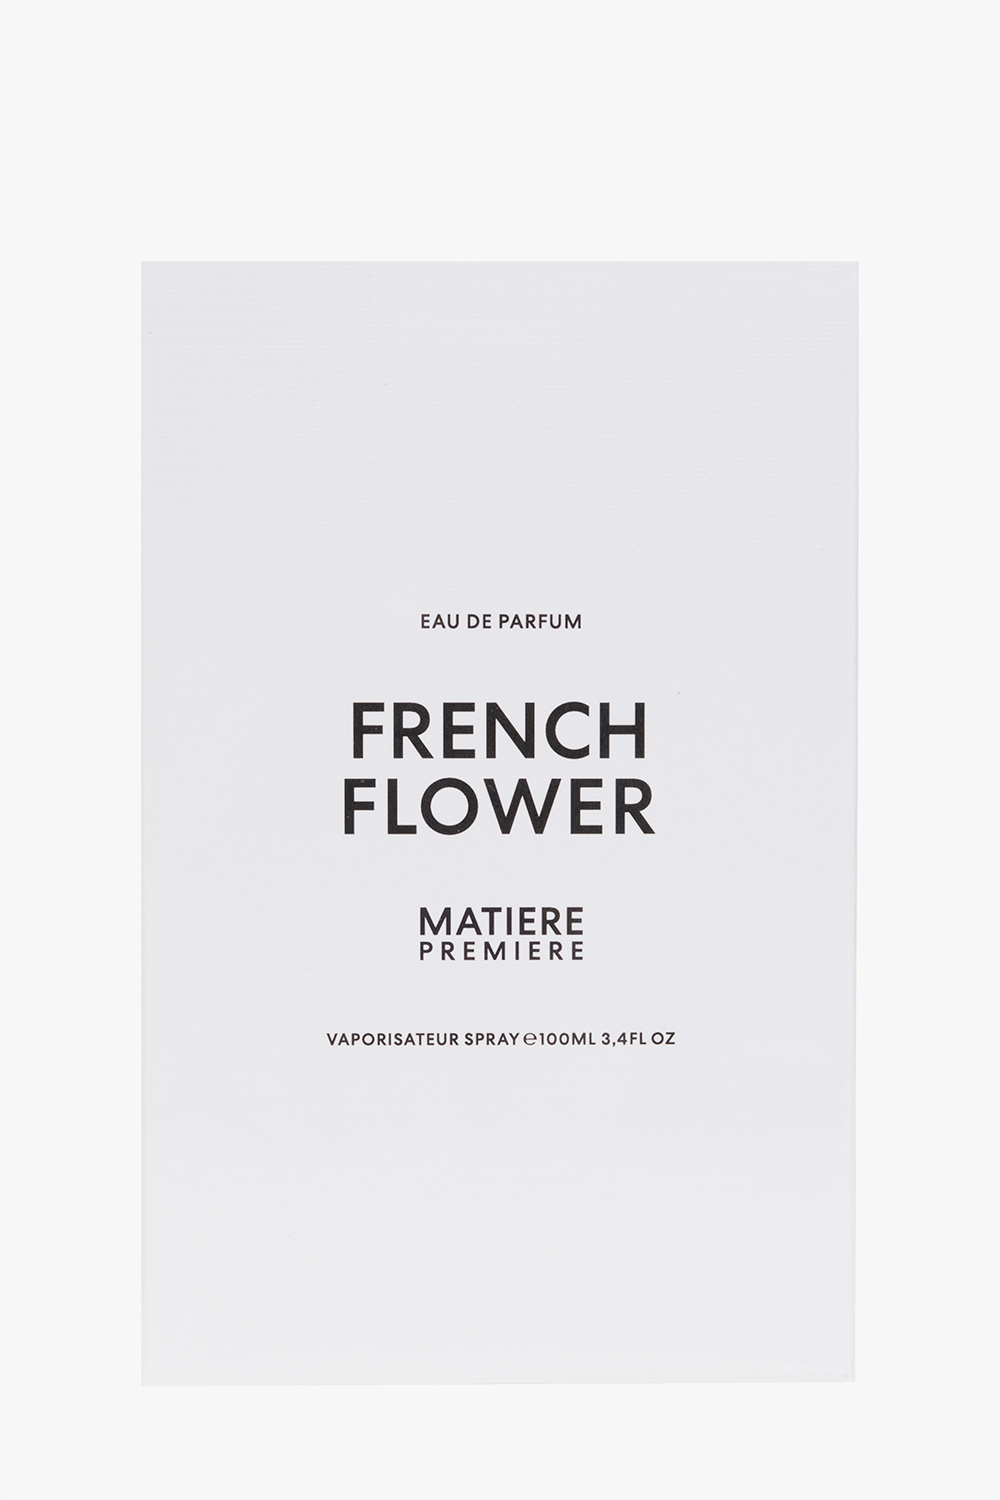 Matiere Premiere ‘French Flower’ eau de parfum